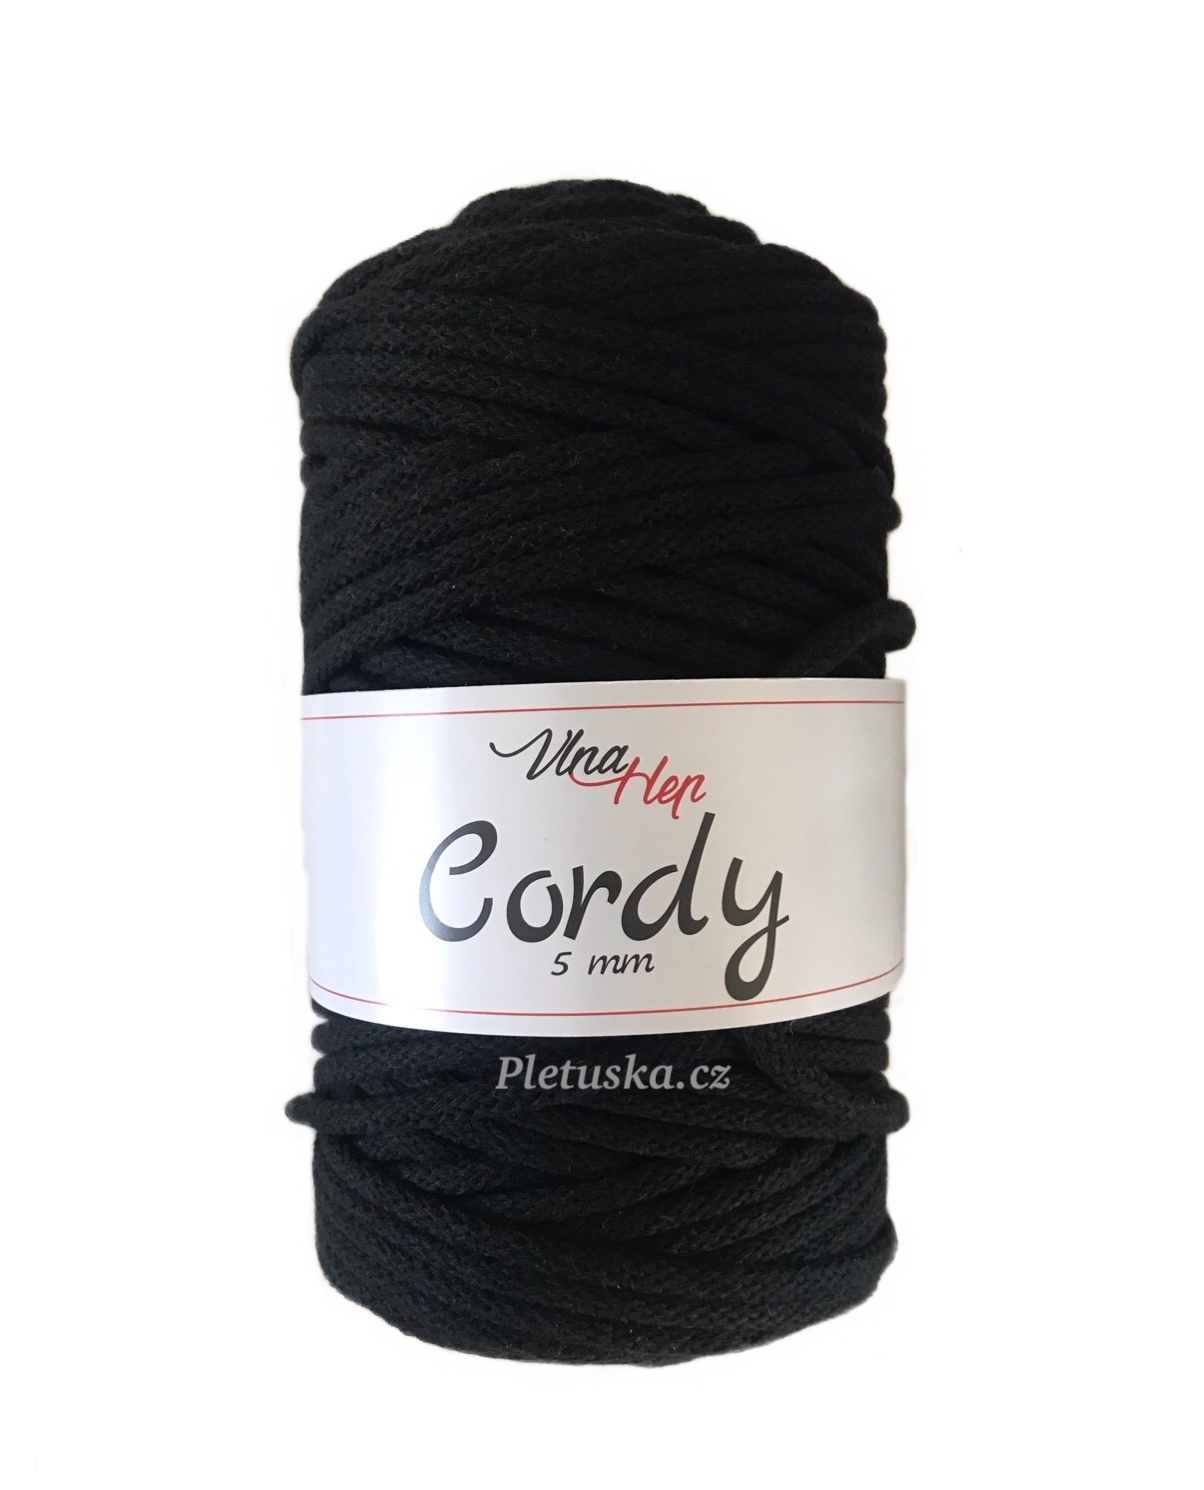 Cordy 5 mm černá 8001